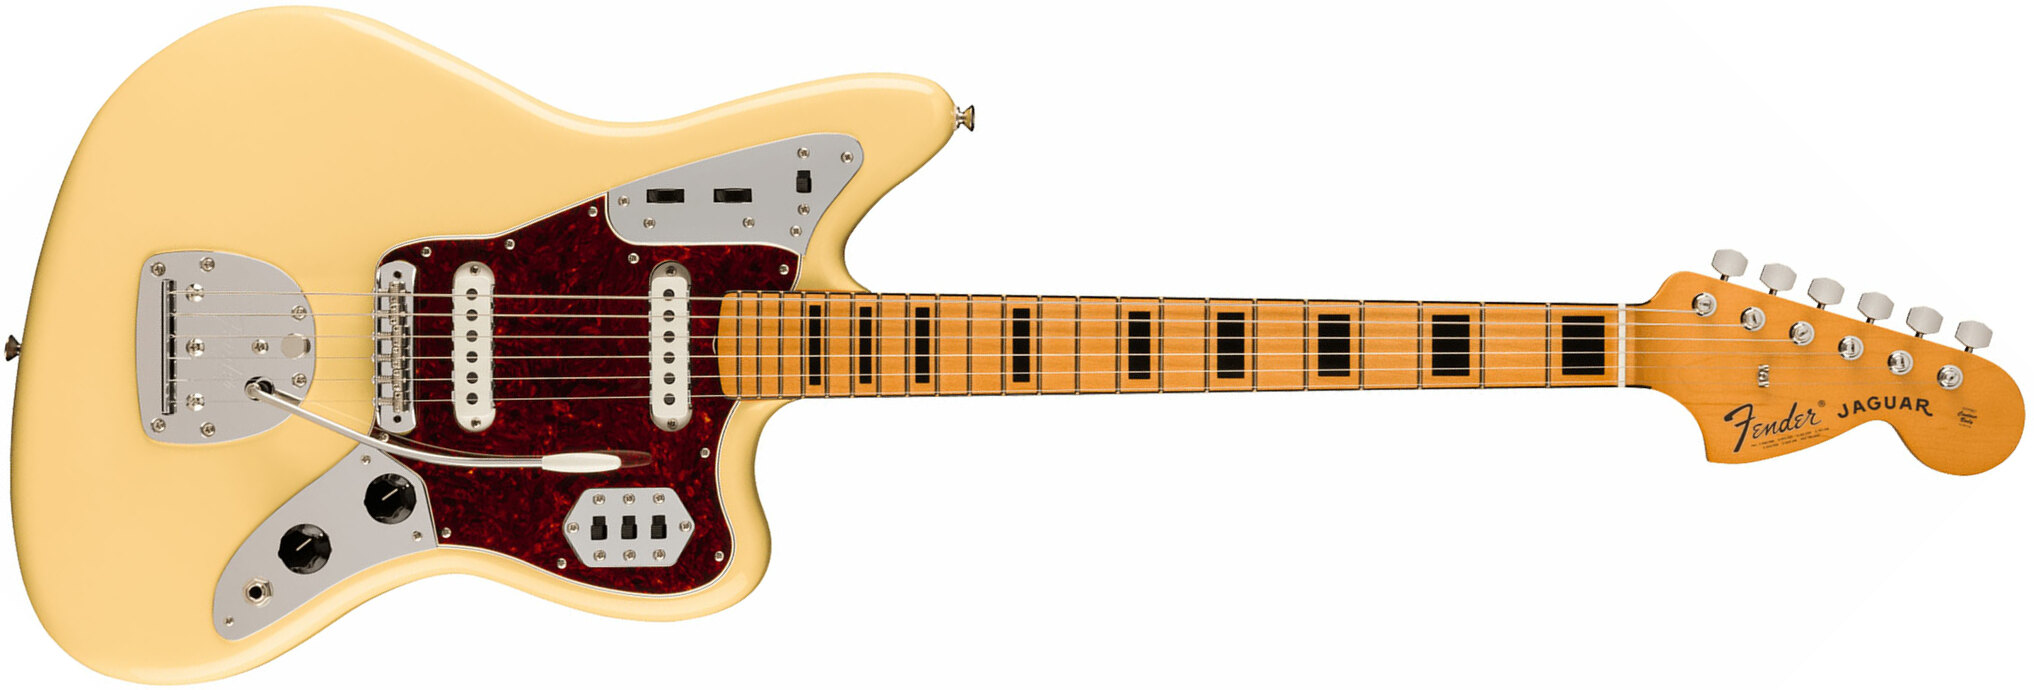 Fender Jaguar 70s Vintera 2 Mex 2s Trem Mn - Vintage White - Retro rock electric guitar - Main picture